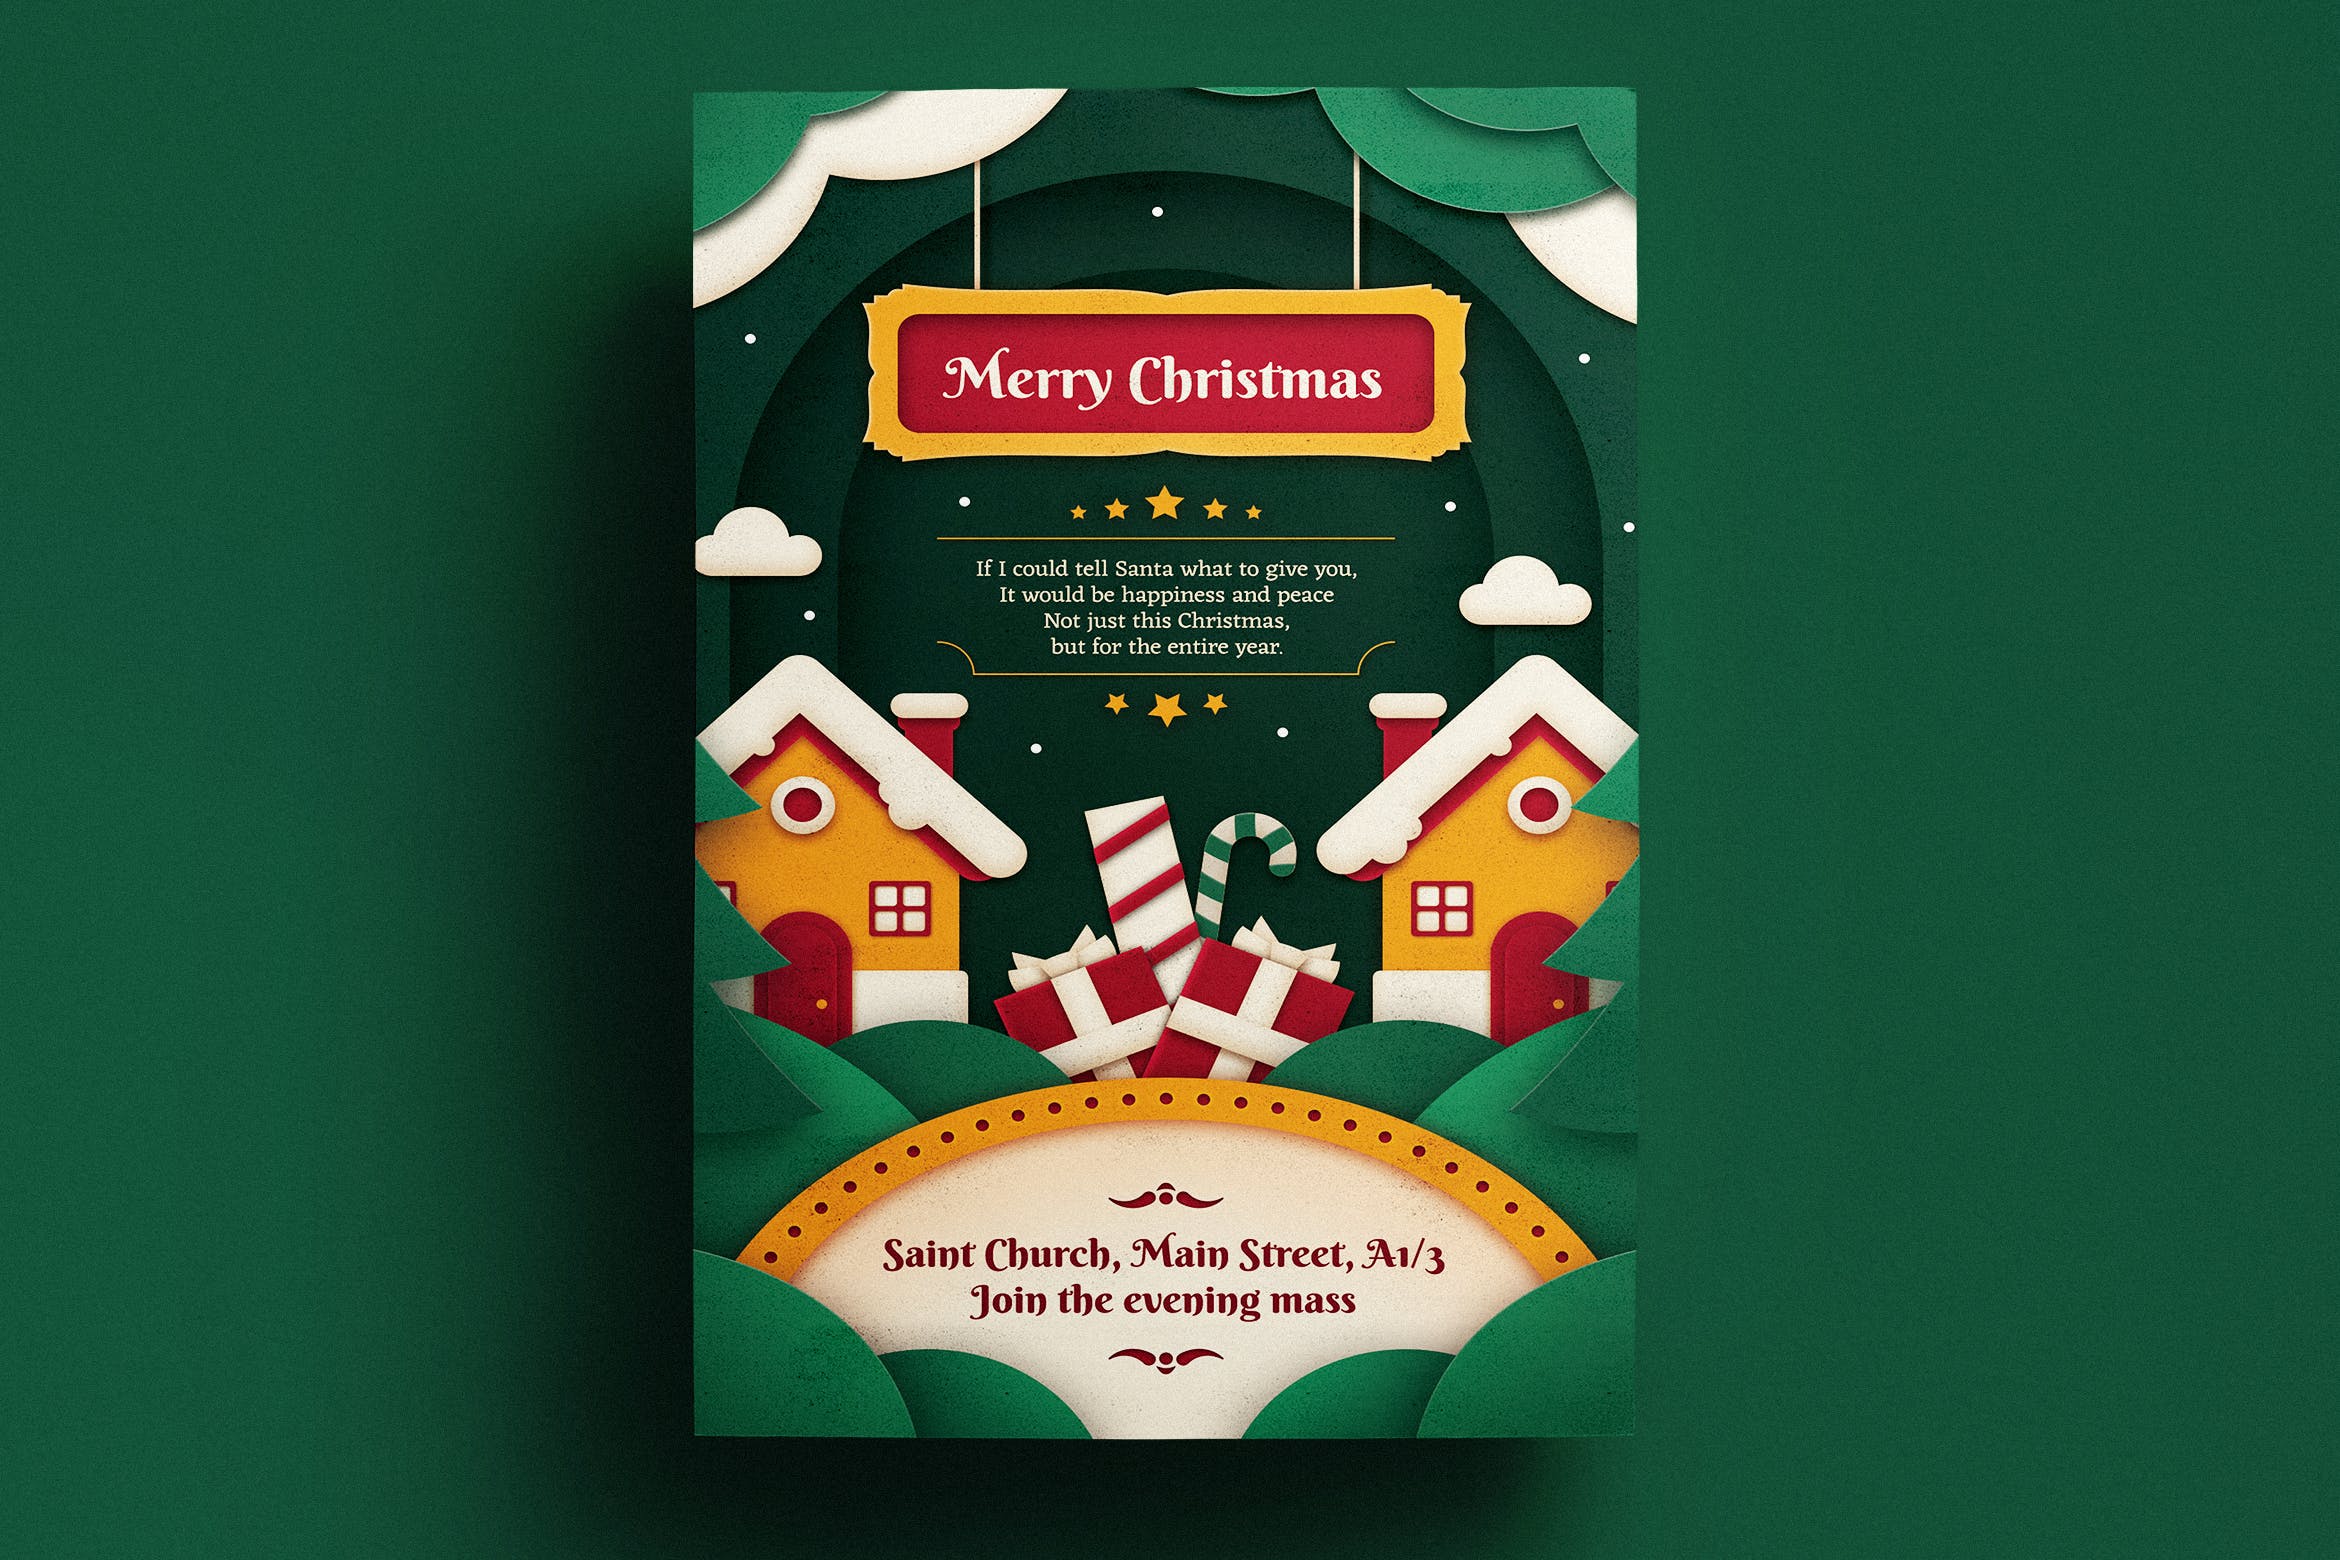 立体剪纸艺术风格圣诞海报传单设计模板v1 Paper Art Christmas Flyer Template插图